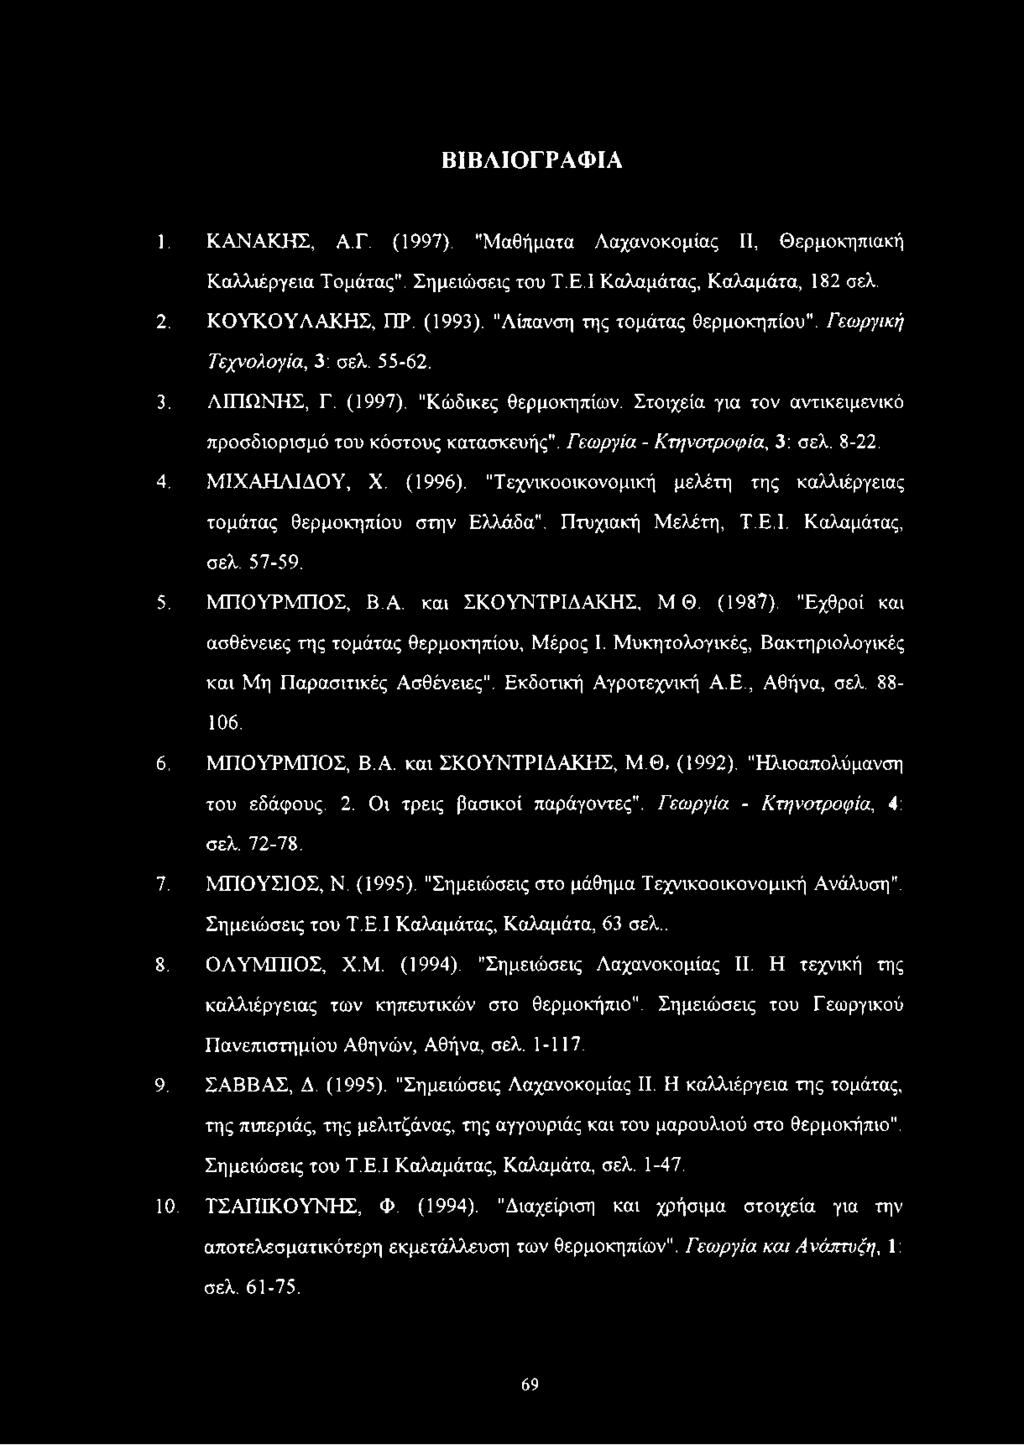 Γεωργία - Κτηνοτροφία, 3: σελ. 8-22. 4. ΜΙΧΑΗΛΙΔΟΥ, X. (1996). "Τεχνικοοικονομική μελέτη της καλλιέργειας τομάτας θερμοκηπίου στην Ελλάδα". Πτυχιακή Μελέτη, Τ.Ε.Ι. Καλαμάτας, σελ. 57-59. 5. ΜΠΟΥΡΜΠΟΣ, Β.